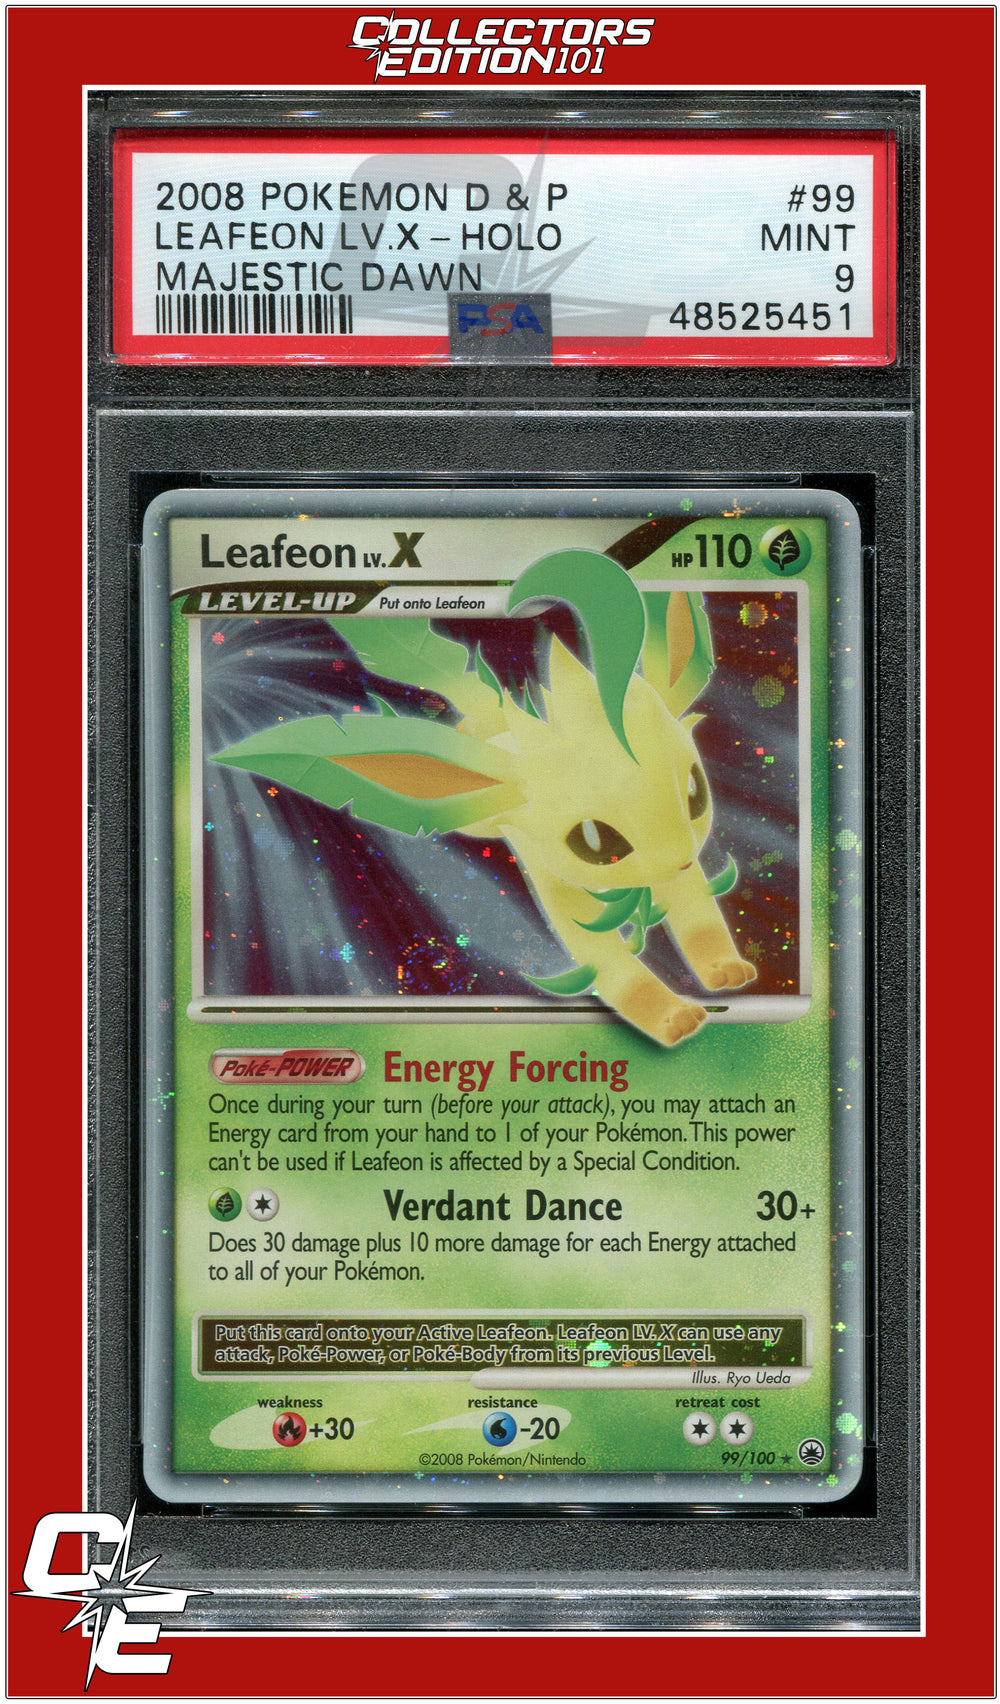 Leafeon LV.X - Majestic Dawn - Pokemon